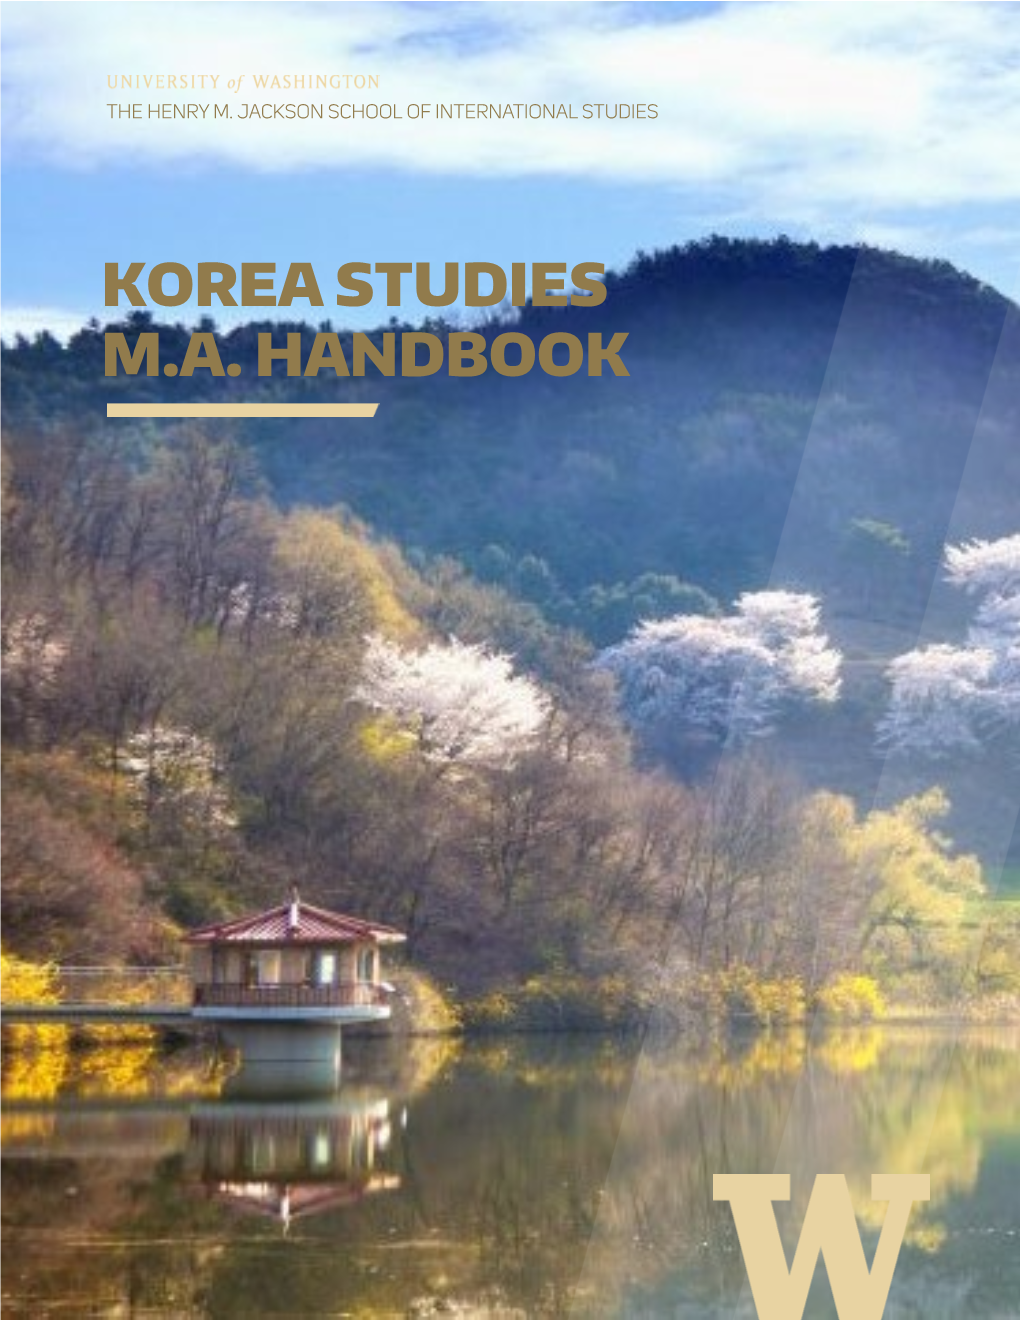 Korea Studies M.A. Handbook Table of Contents